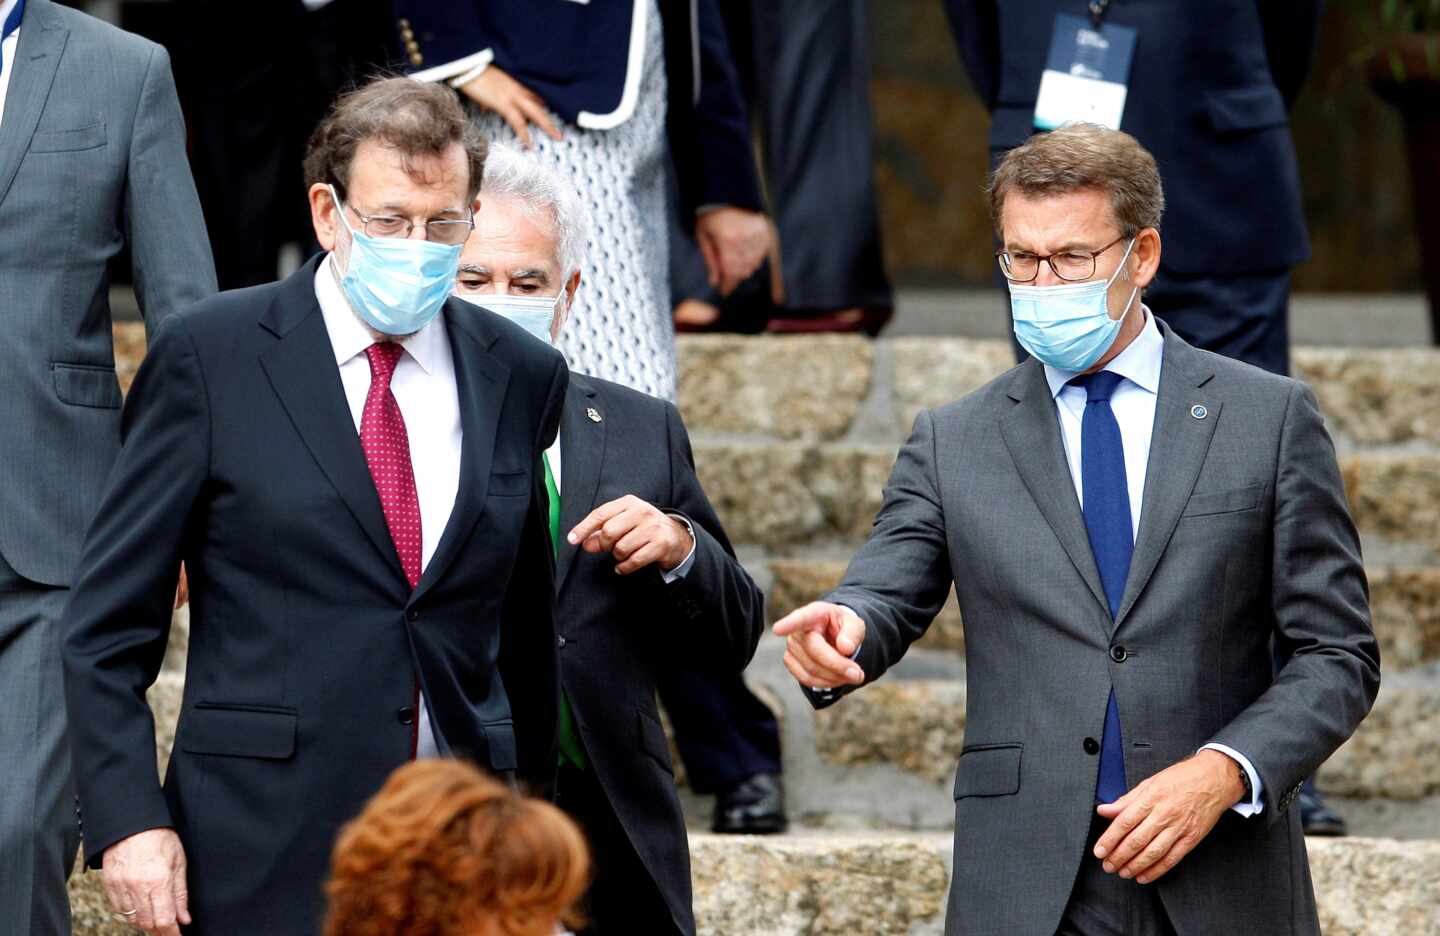 Rajoy señala a Sánchez: ""El mayor responsable es el que ocupa el puesto más alto"